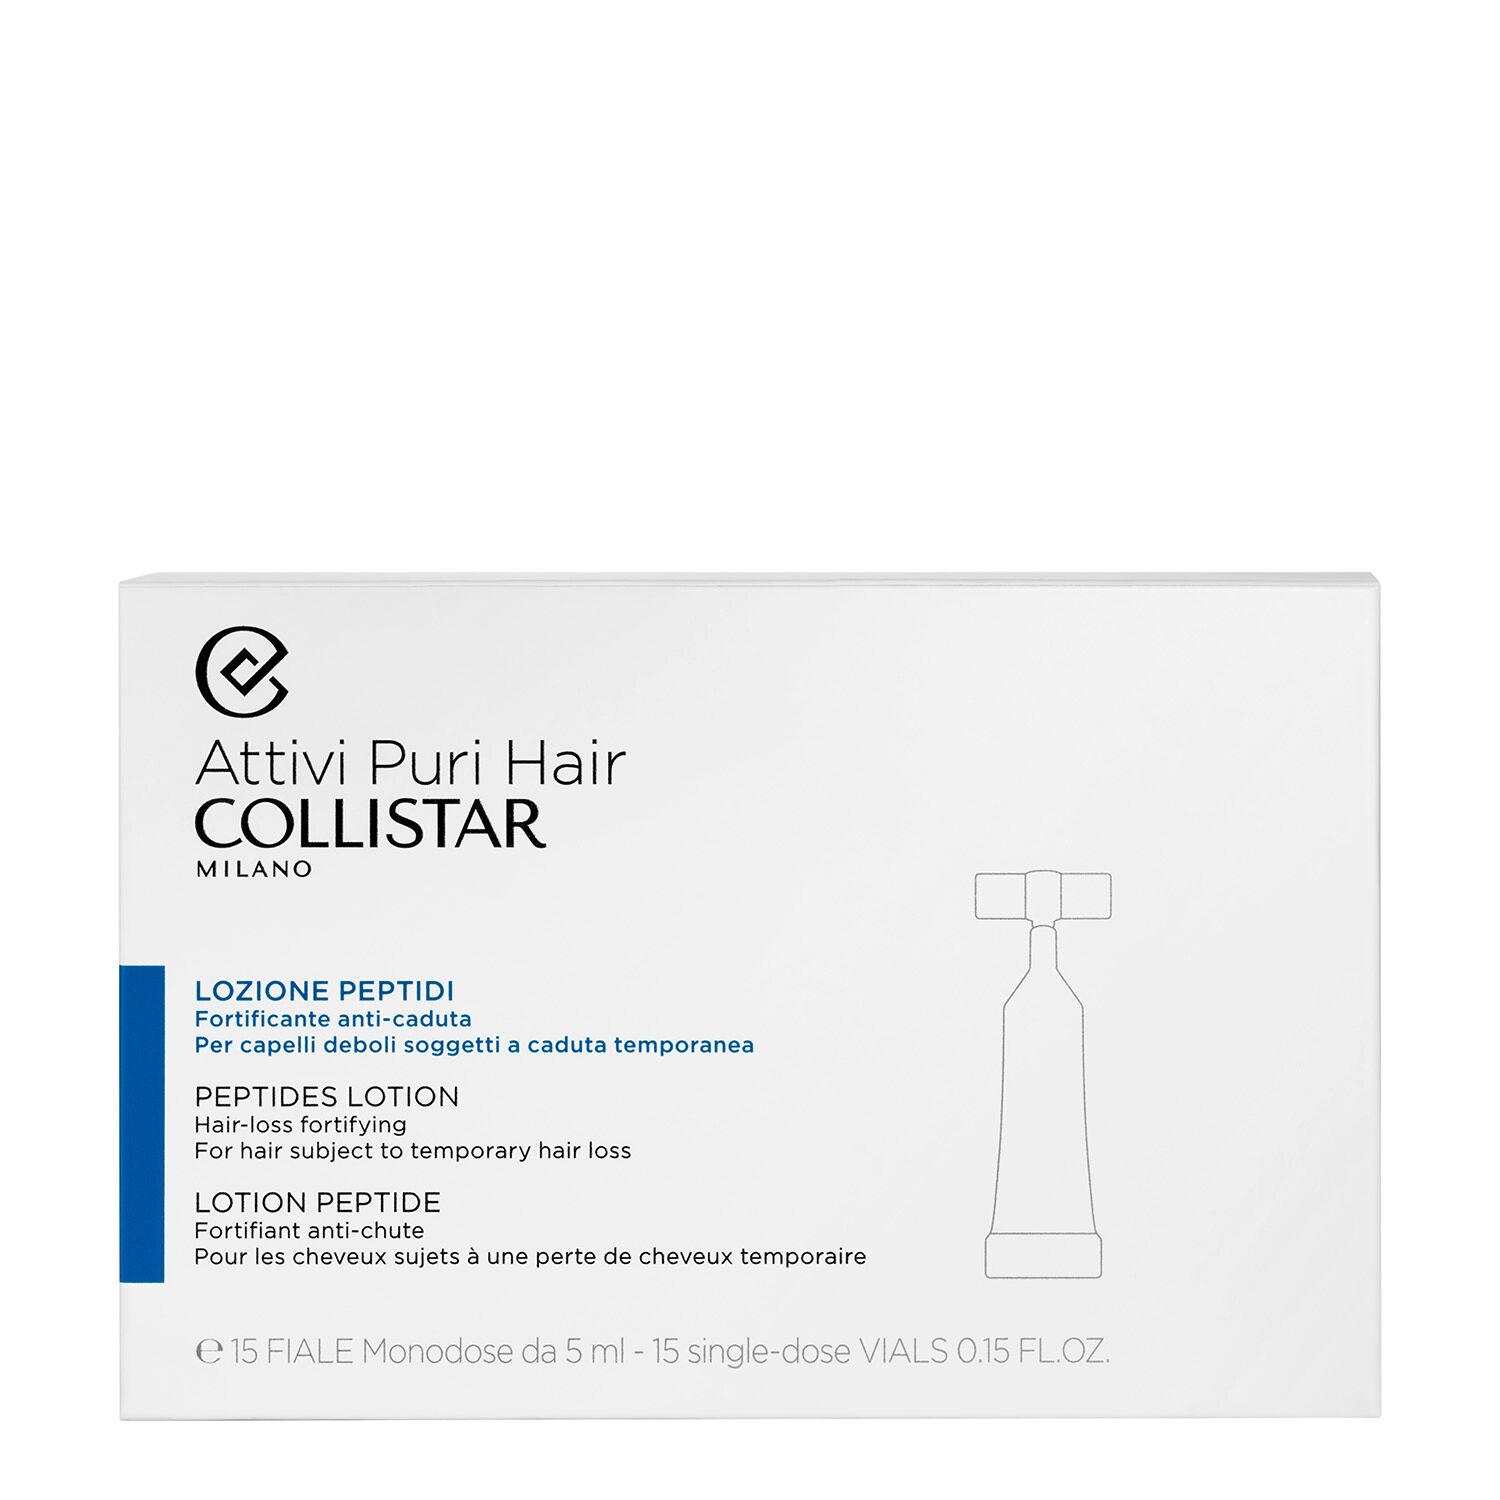 COLLISTAR Attivi Puri Hair Lozione Peptidi Fortificante Anti-Caduta 15x5 ml